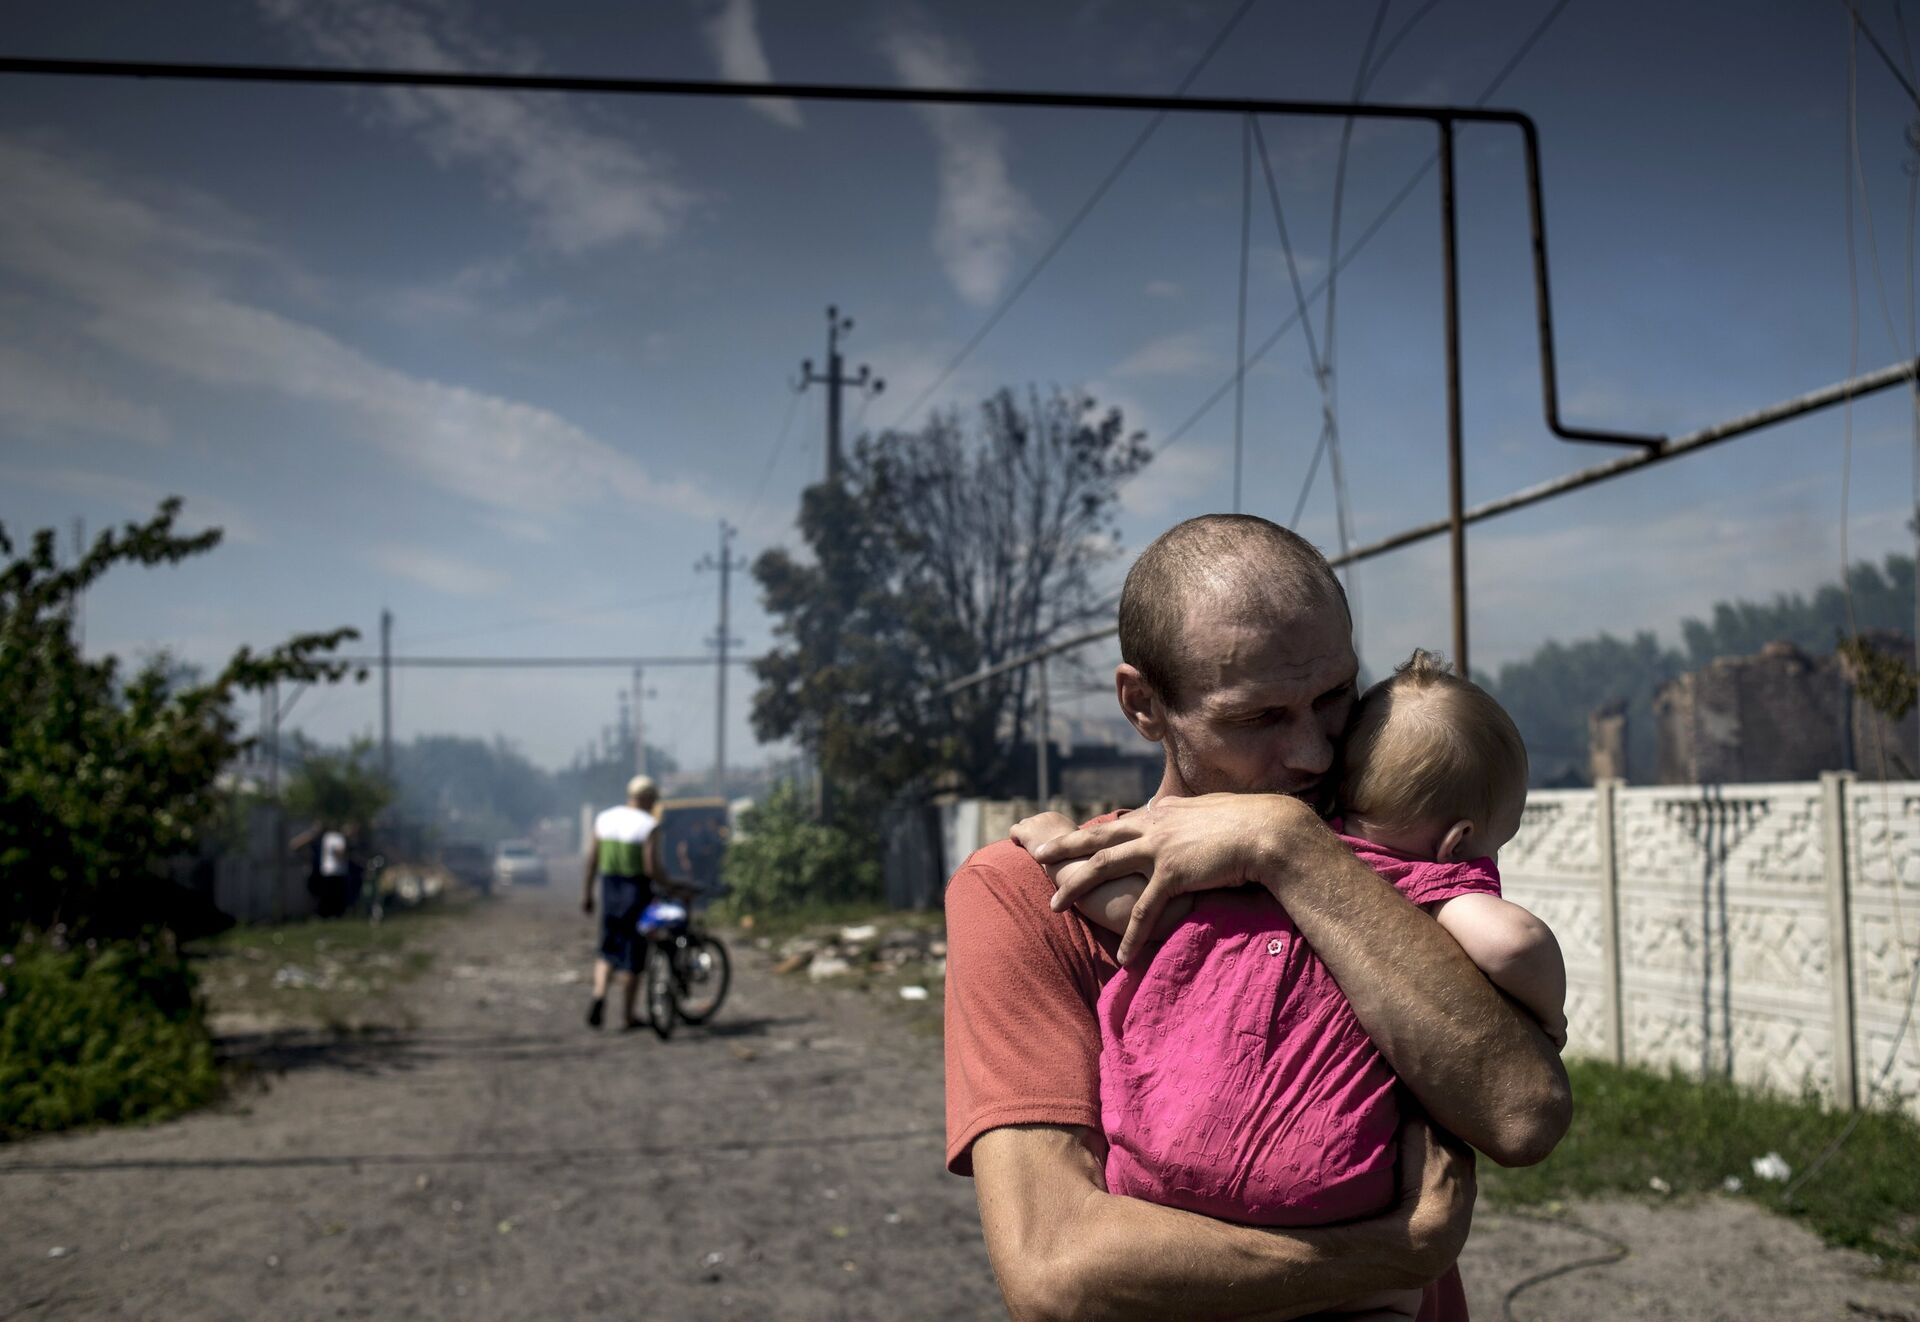 Украина страдает. Станица Луганская 2 июля 2014.